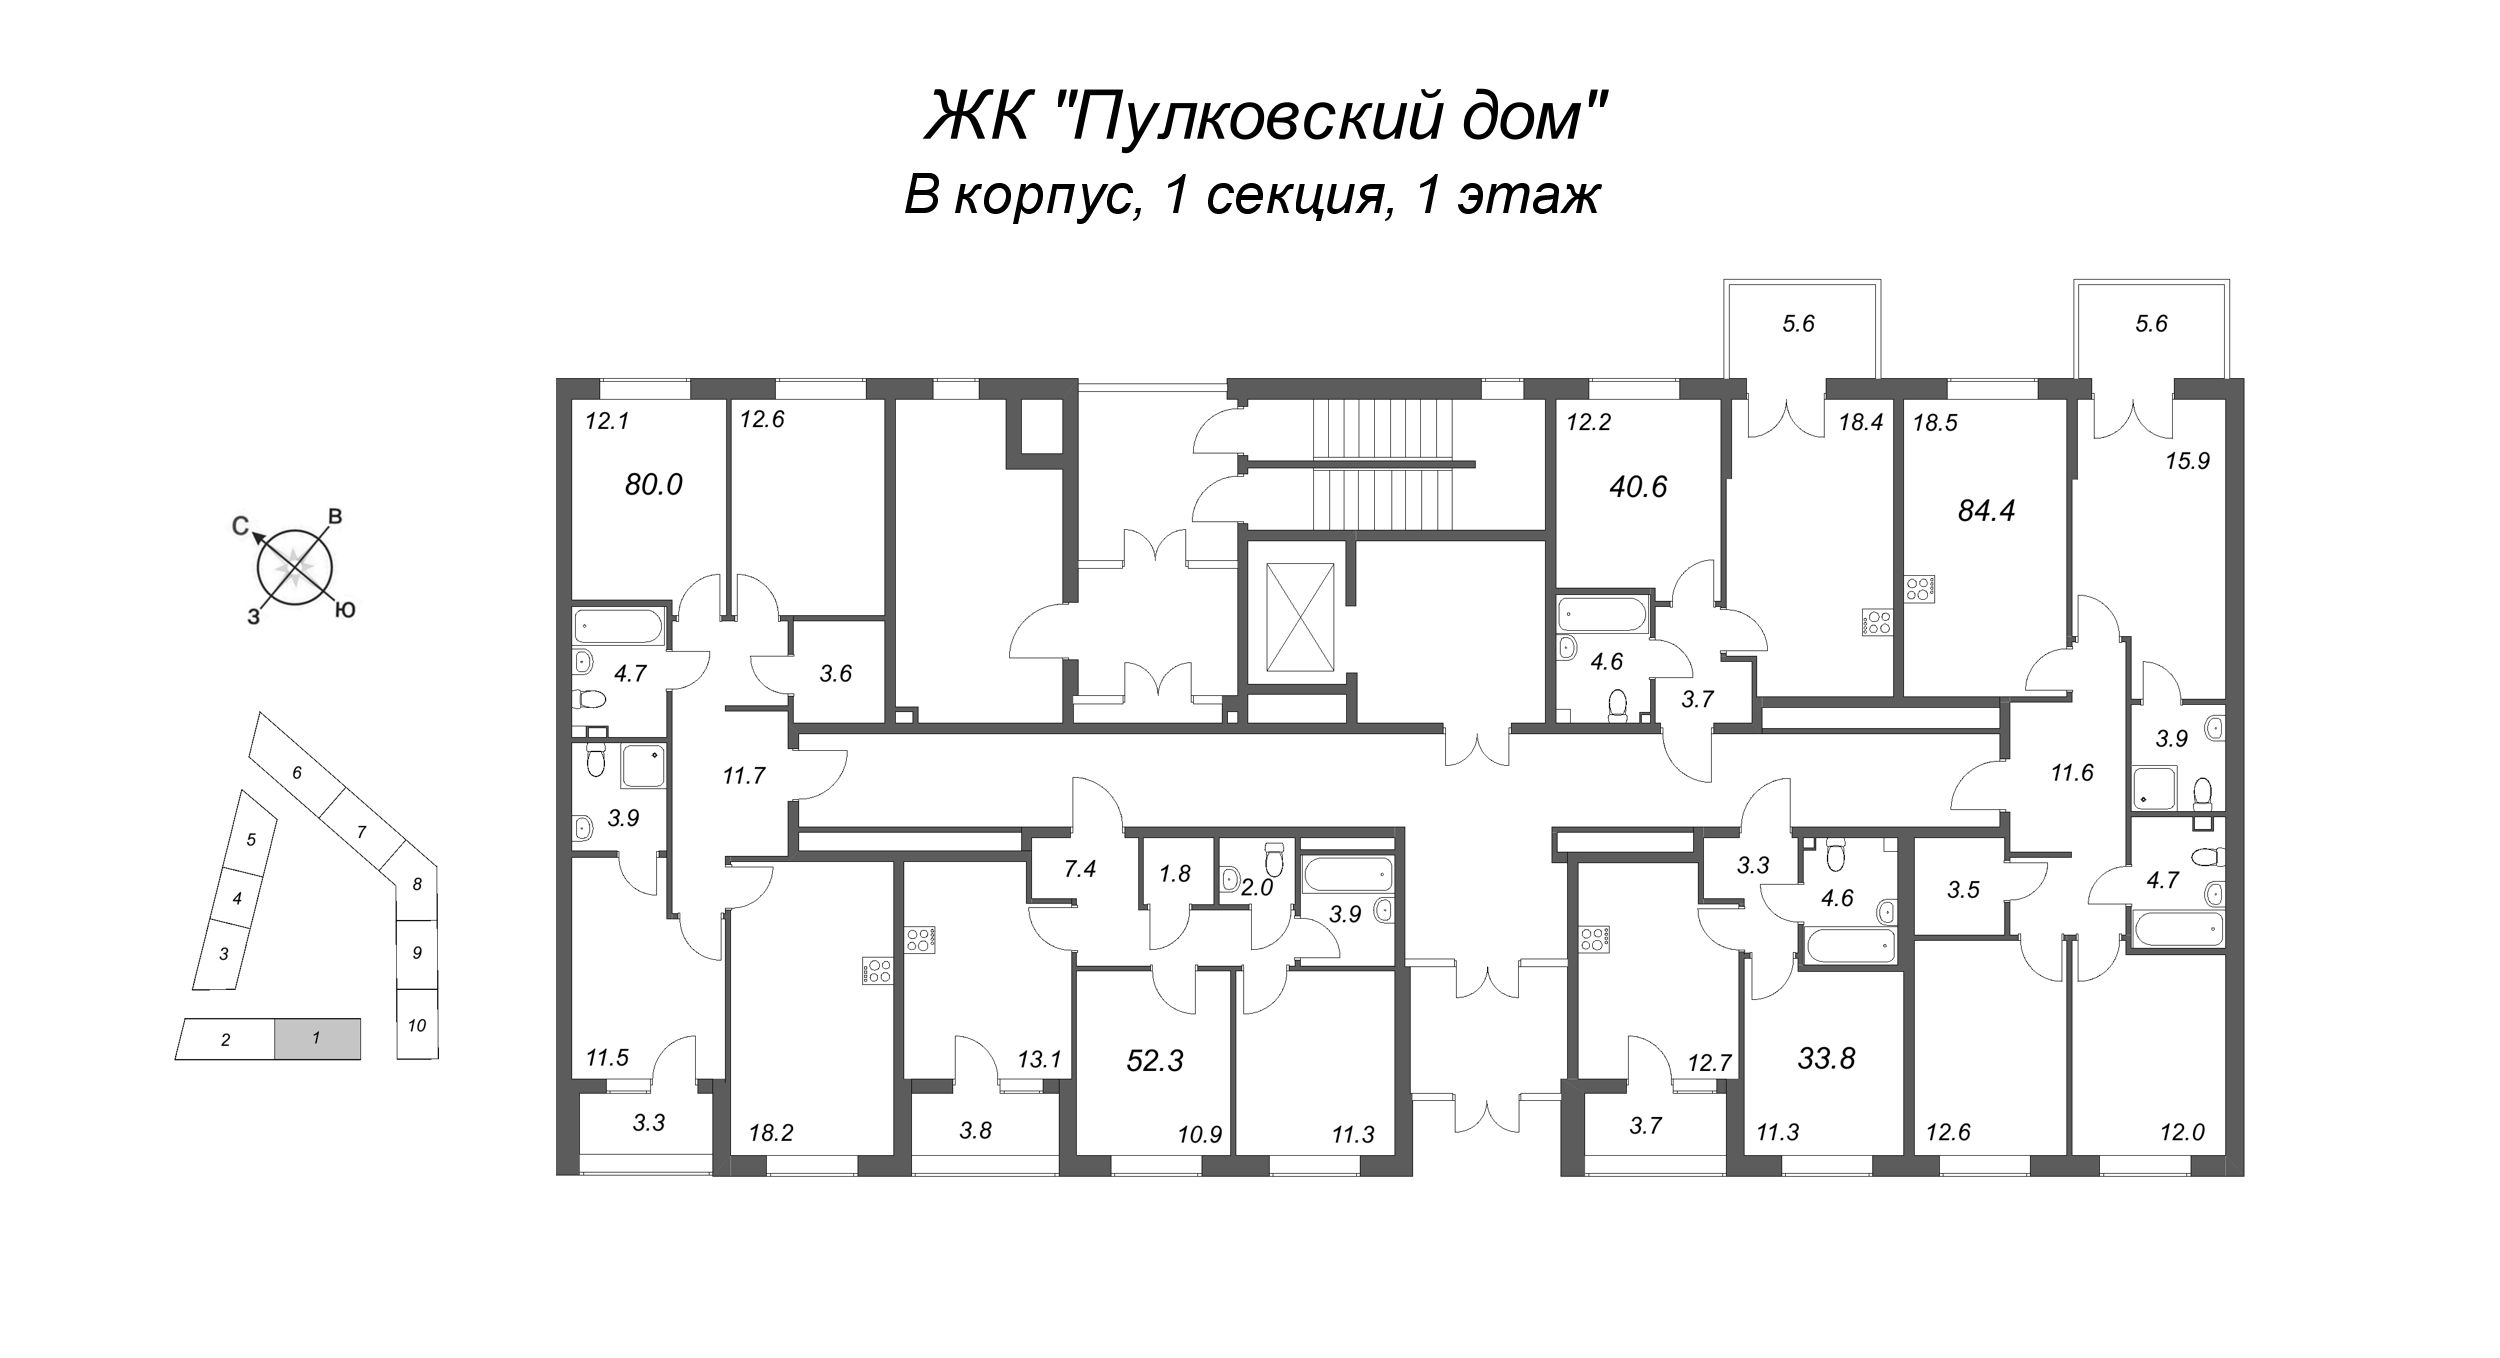 2-комнатная (Евро) квартира, 40.6 м² в ЖК "Пулковский дом" - планировка этажа